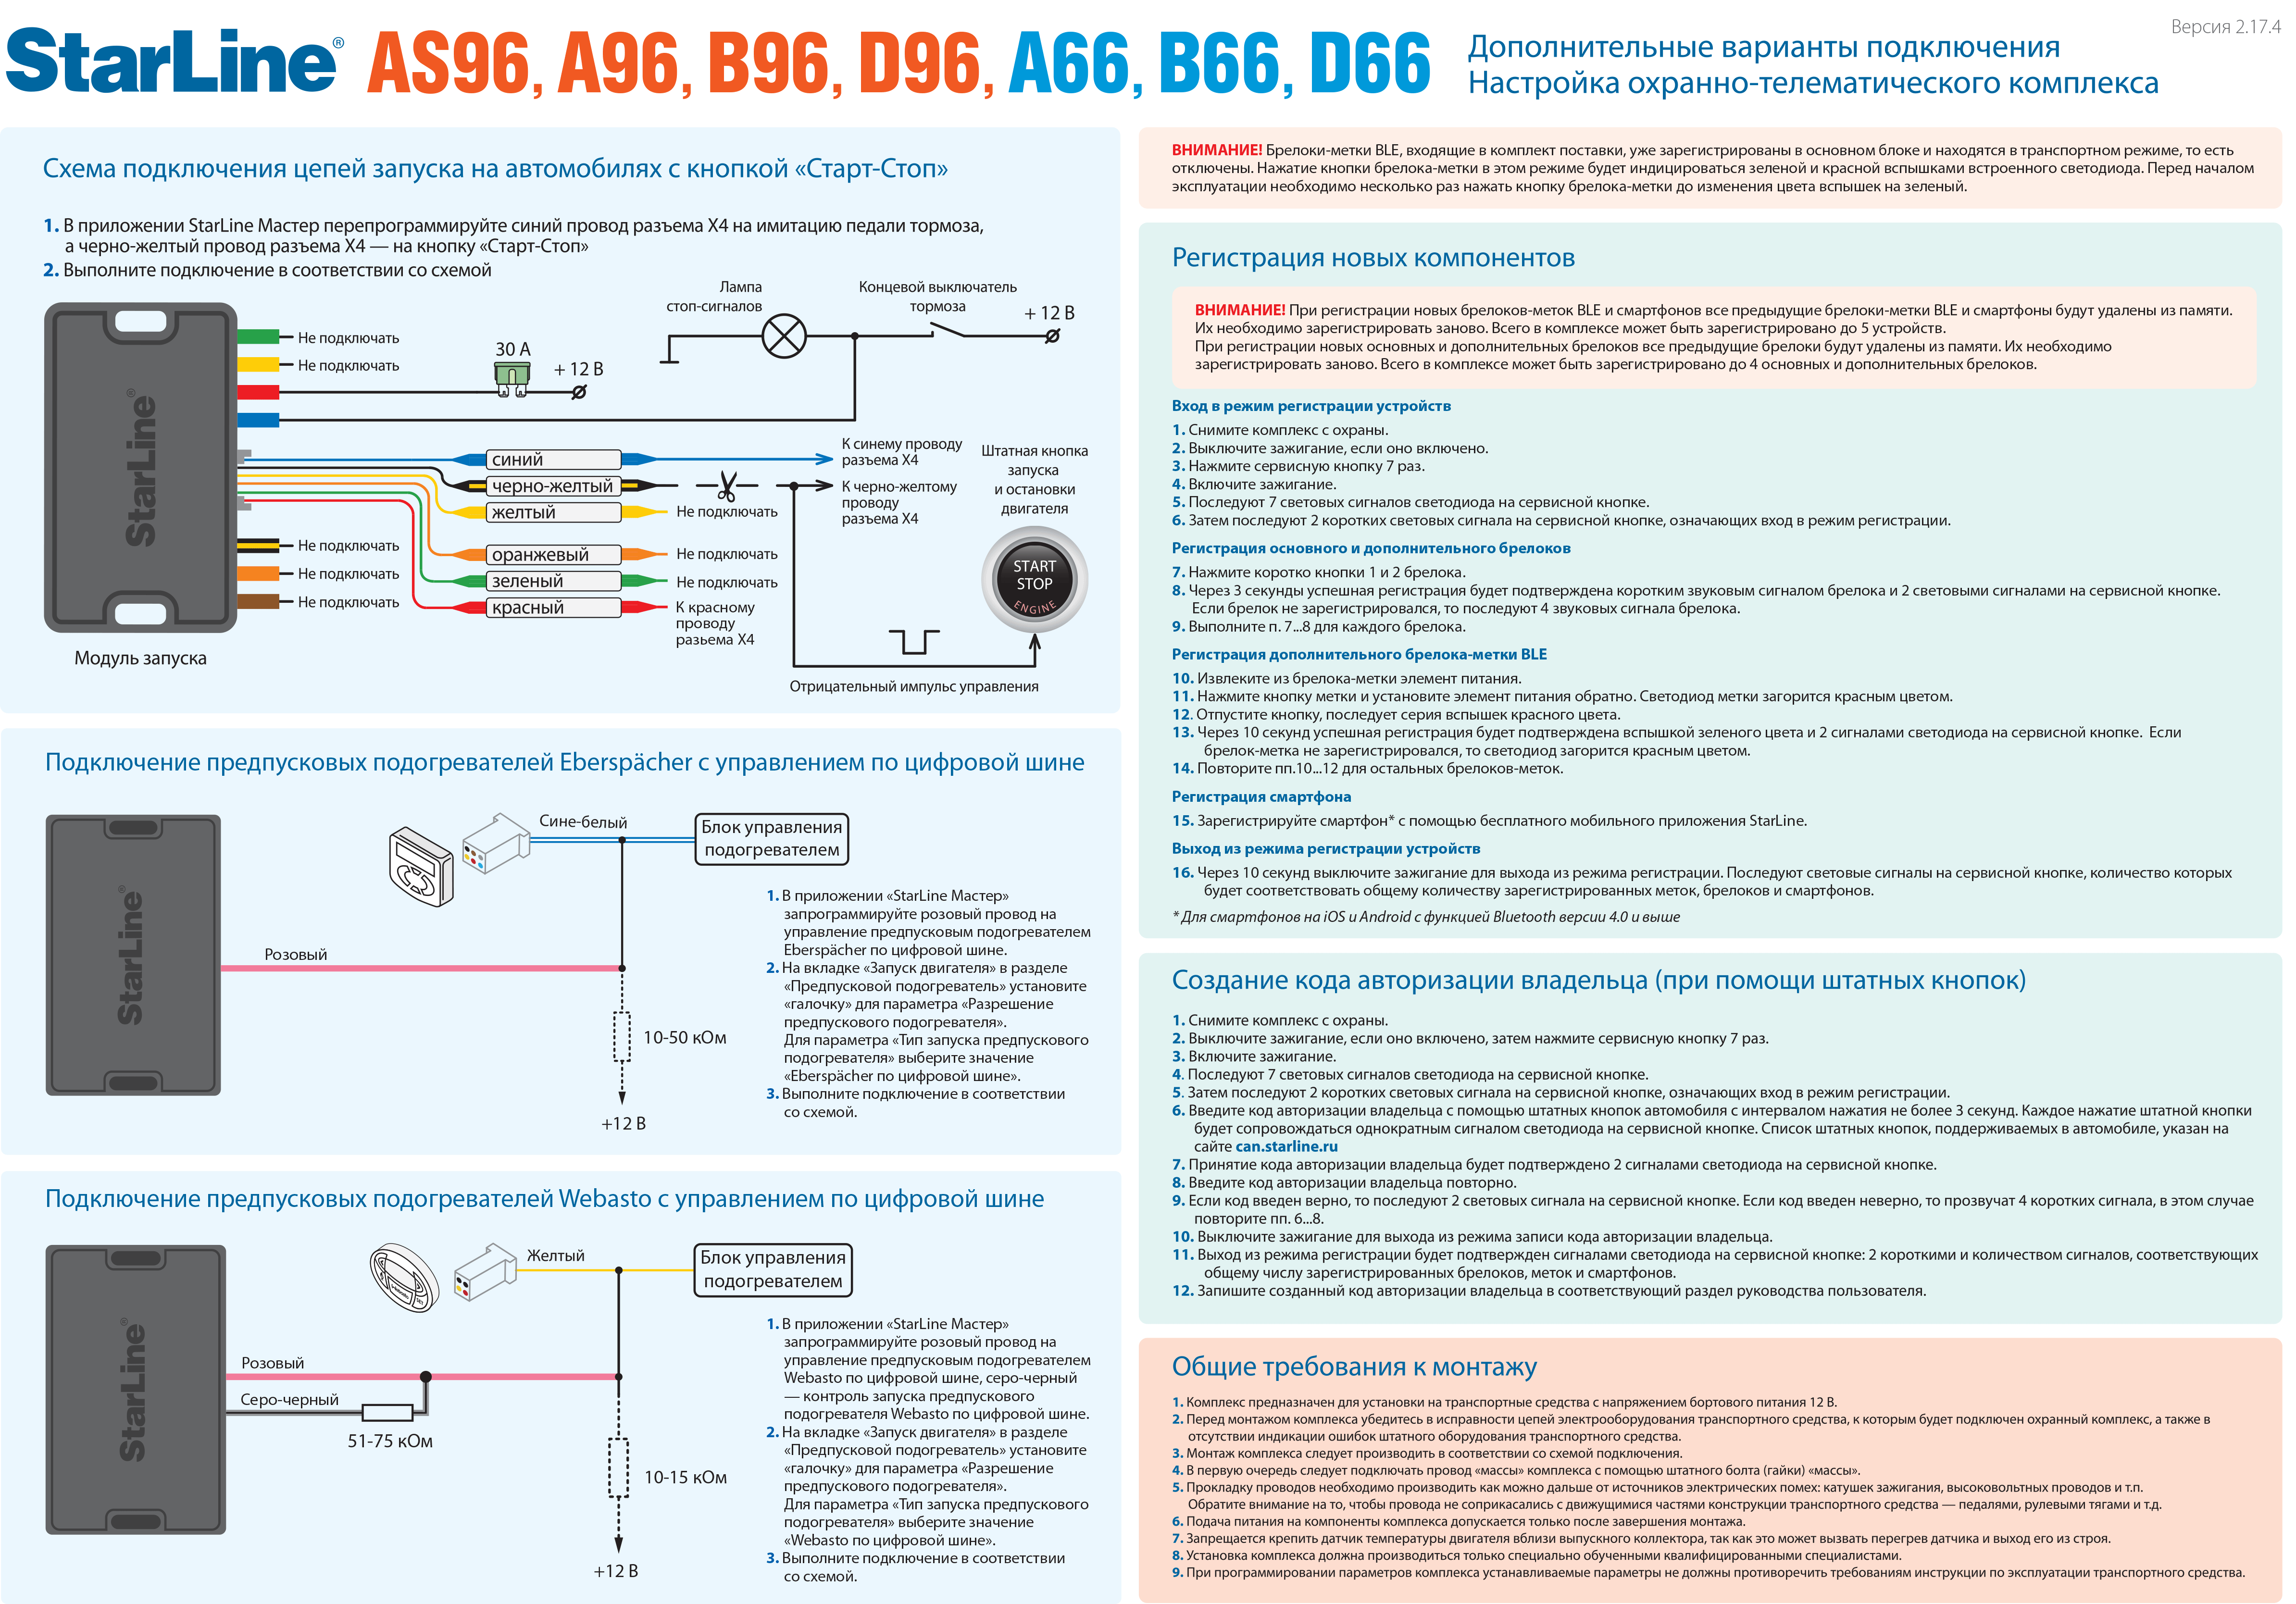 Старлайн а93 не открывает двери. Схема сигнализации старлайн а91. Схема подключения автосигнализации старлайн а8. Схема сигнализации старлайн а61. Схема подключения автосигнализации старлайн а91.